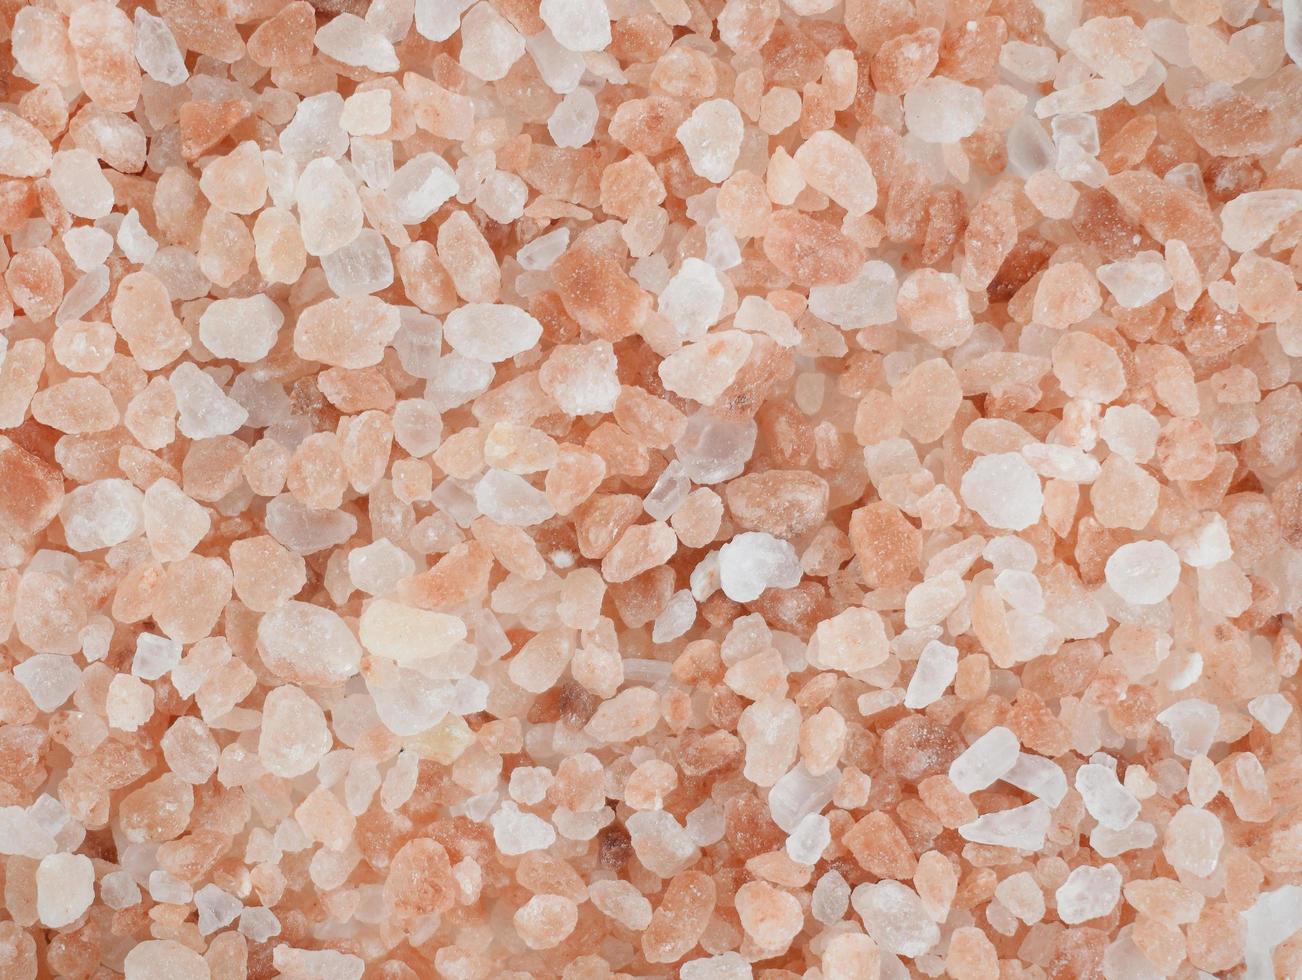 cristalli di sale himalayano rosa come sfondo. trama fatta di sale roccioso rosa. foto